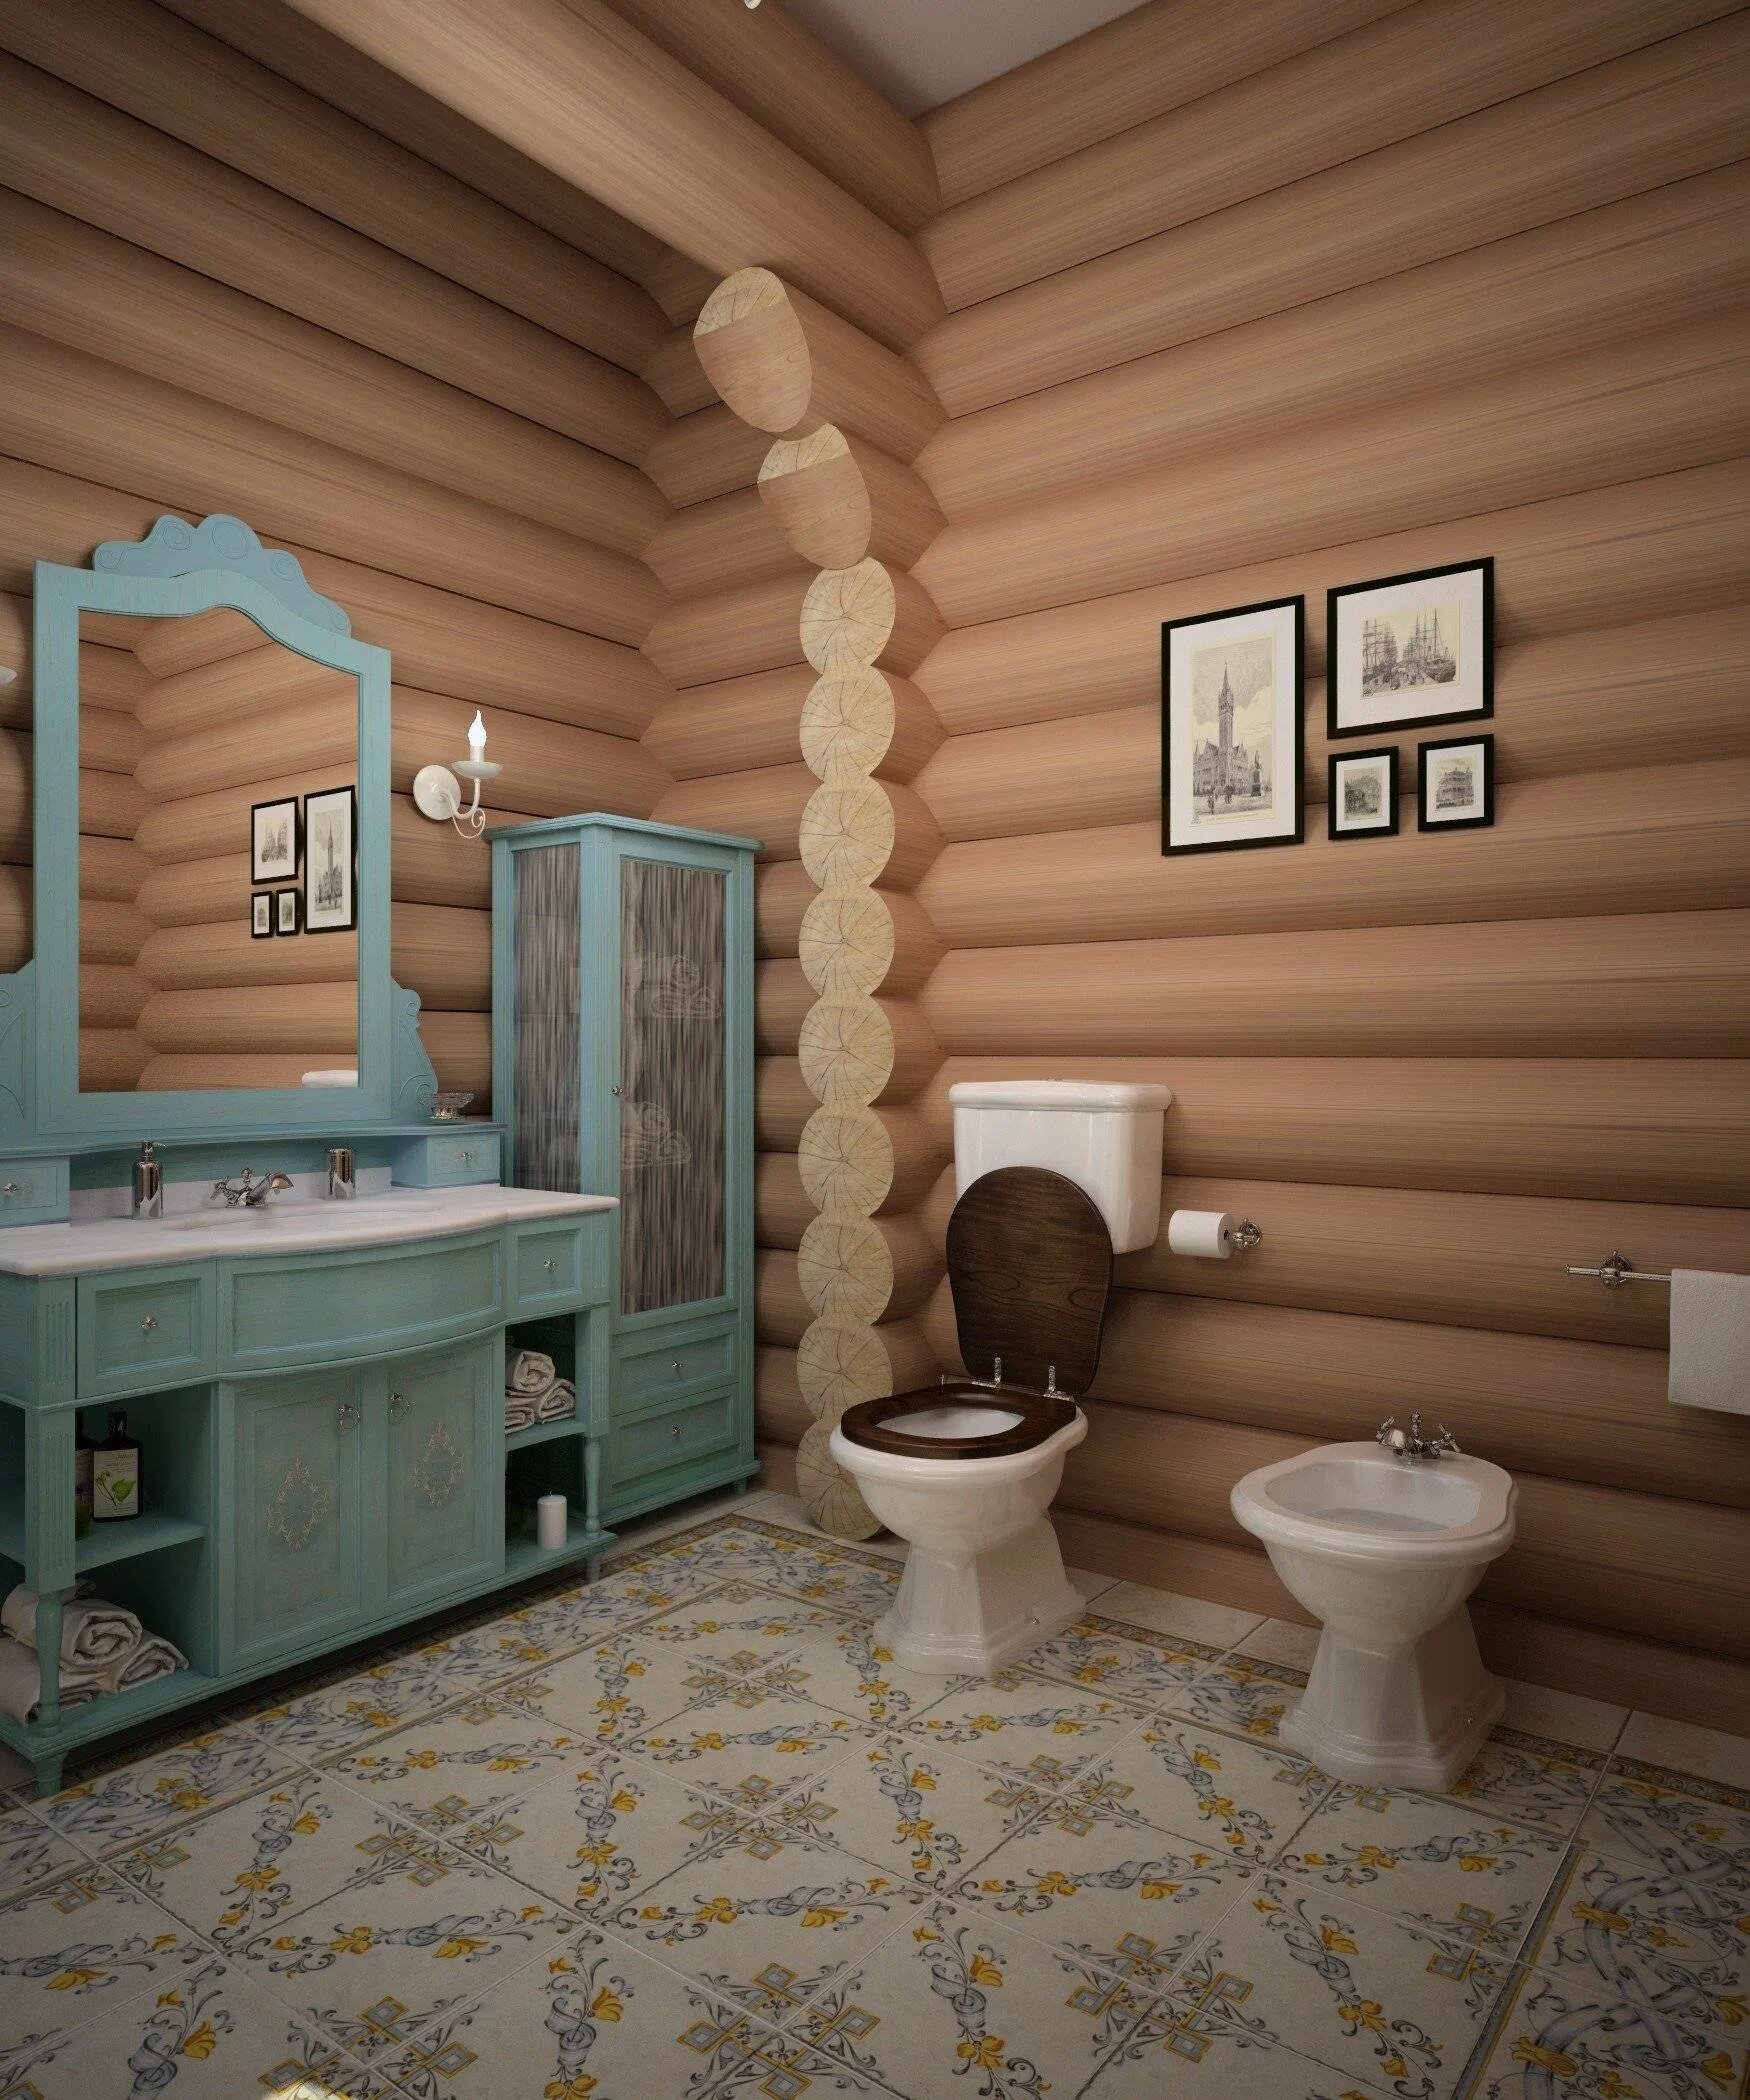 Дизайн комнат в деревянном доме. Санузел в деревянном доме. Ванная комната в деревянном доме. Санузел в доме из оцилиндрованного бревна. Туалет в доме из оцилиндрованного бревна.